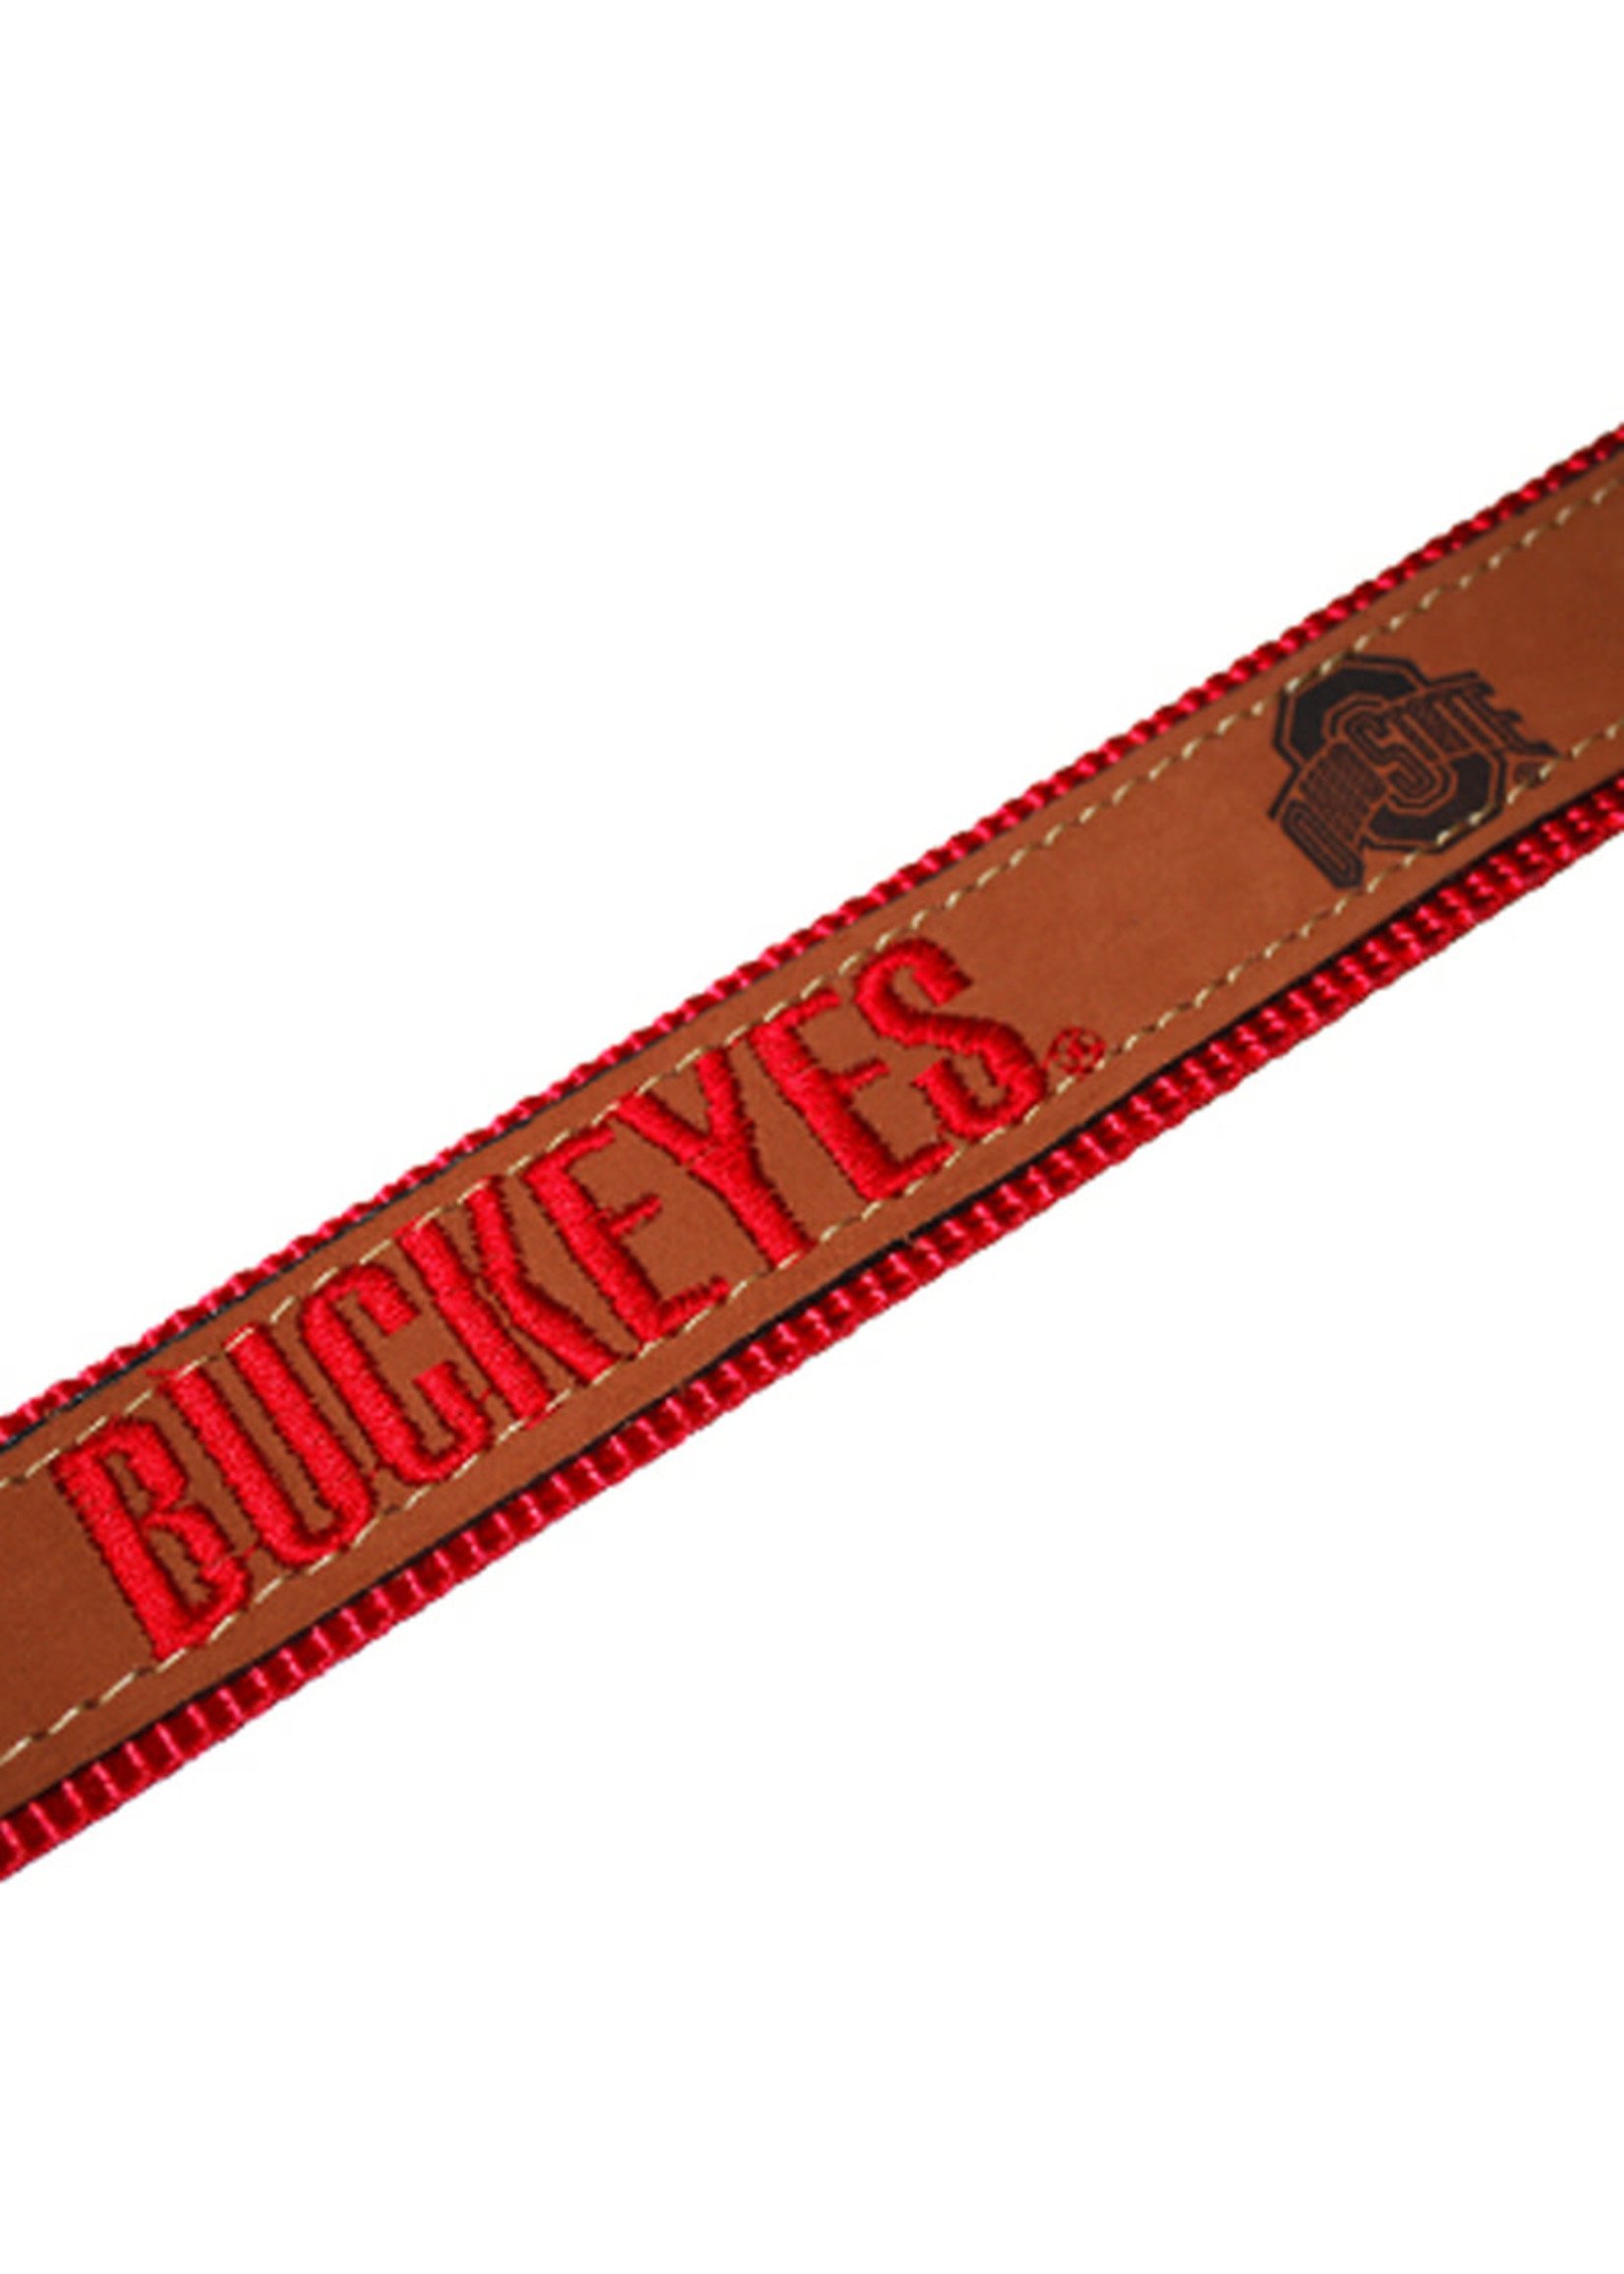 Ohio State Buckeyes Zeppro Leather Dog Collar